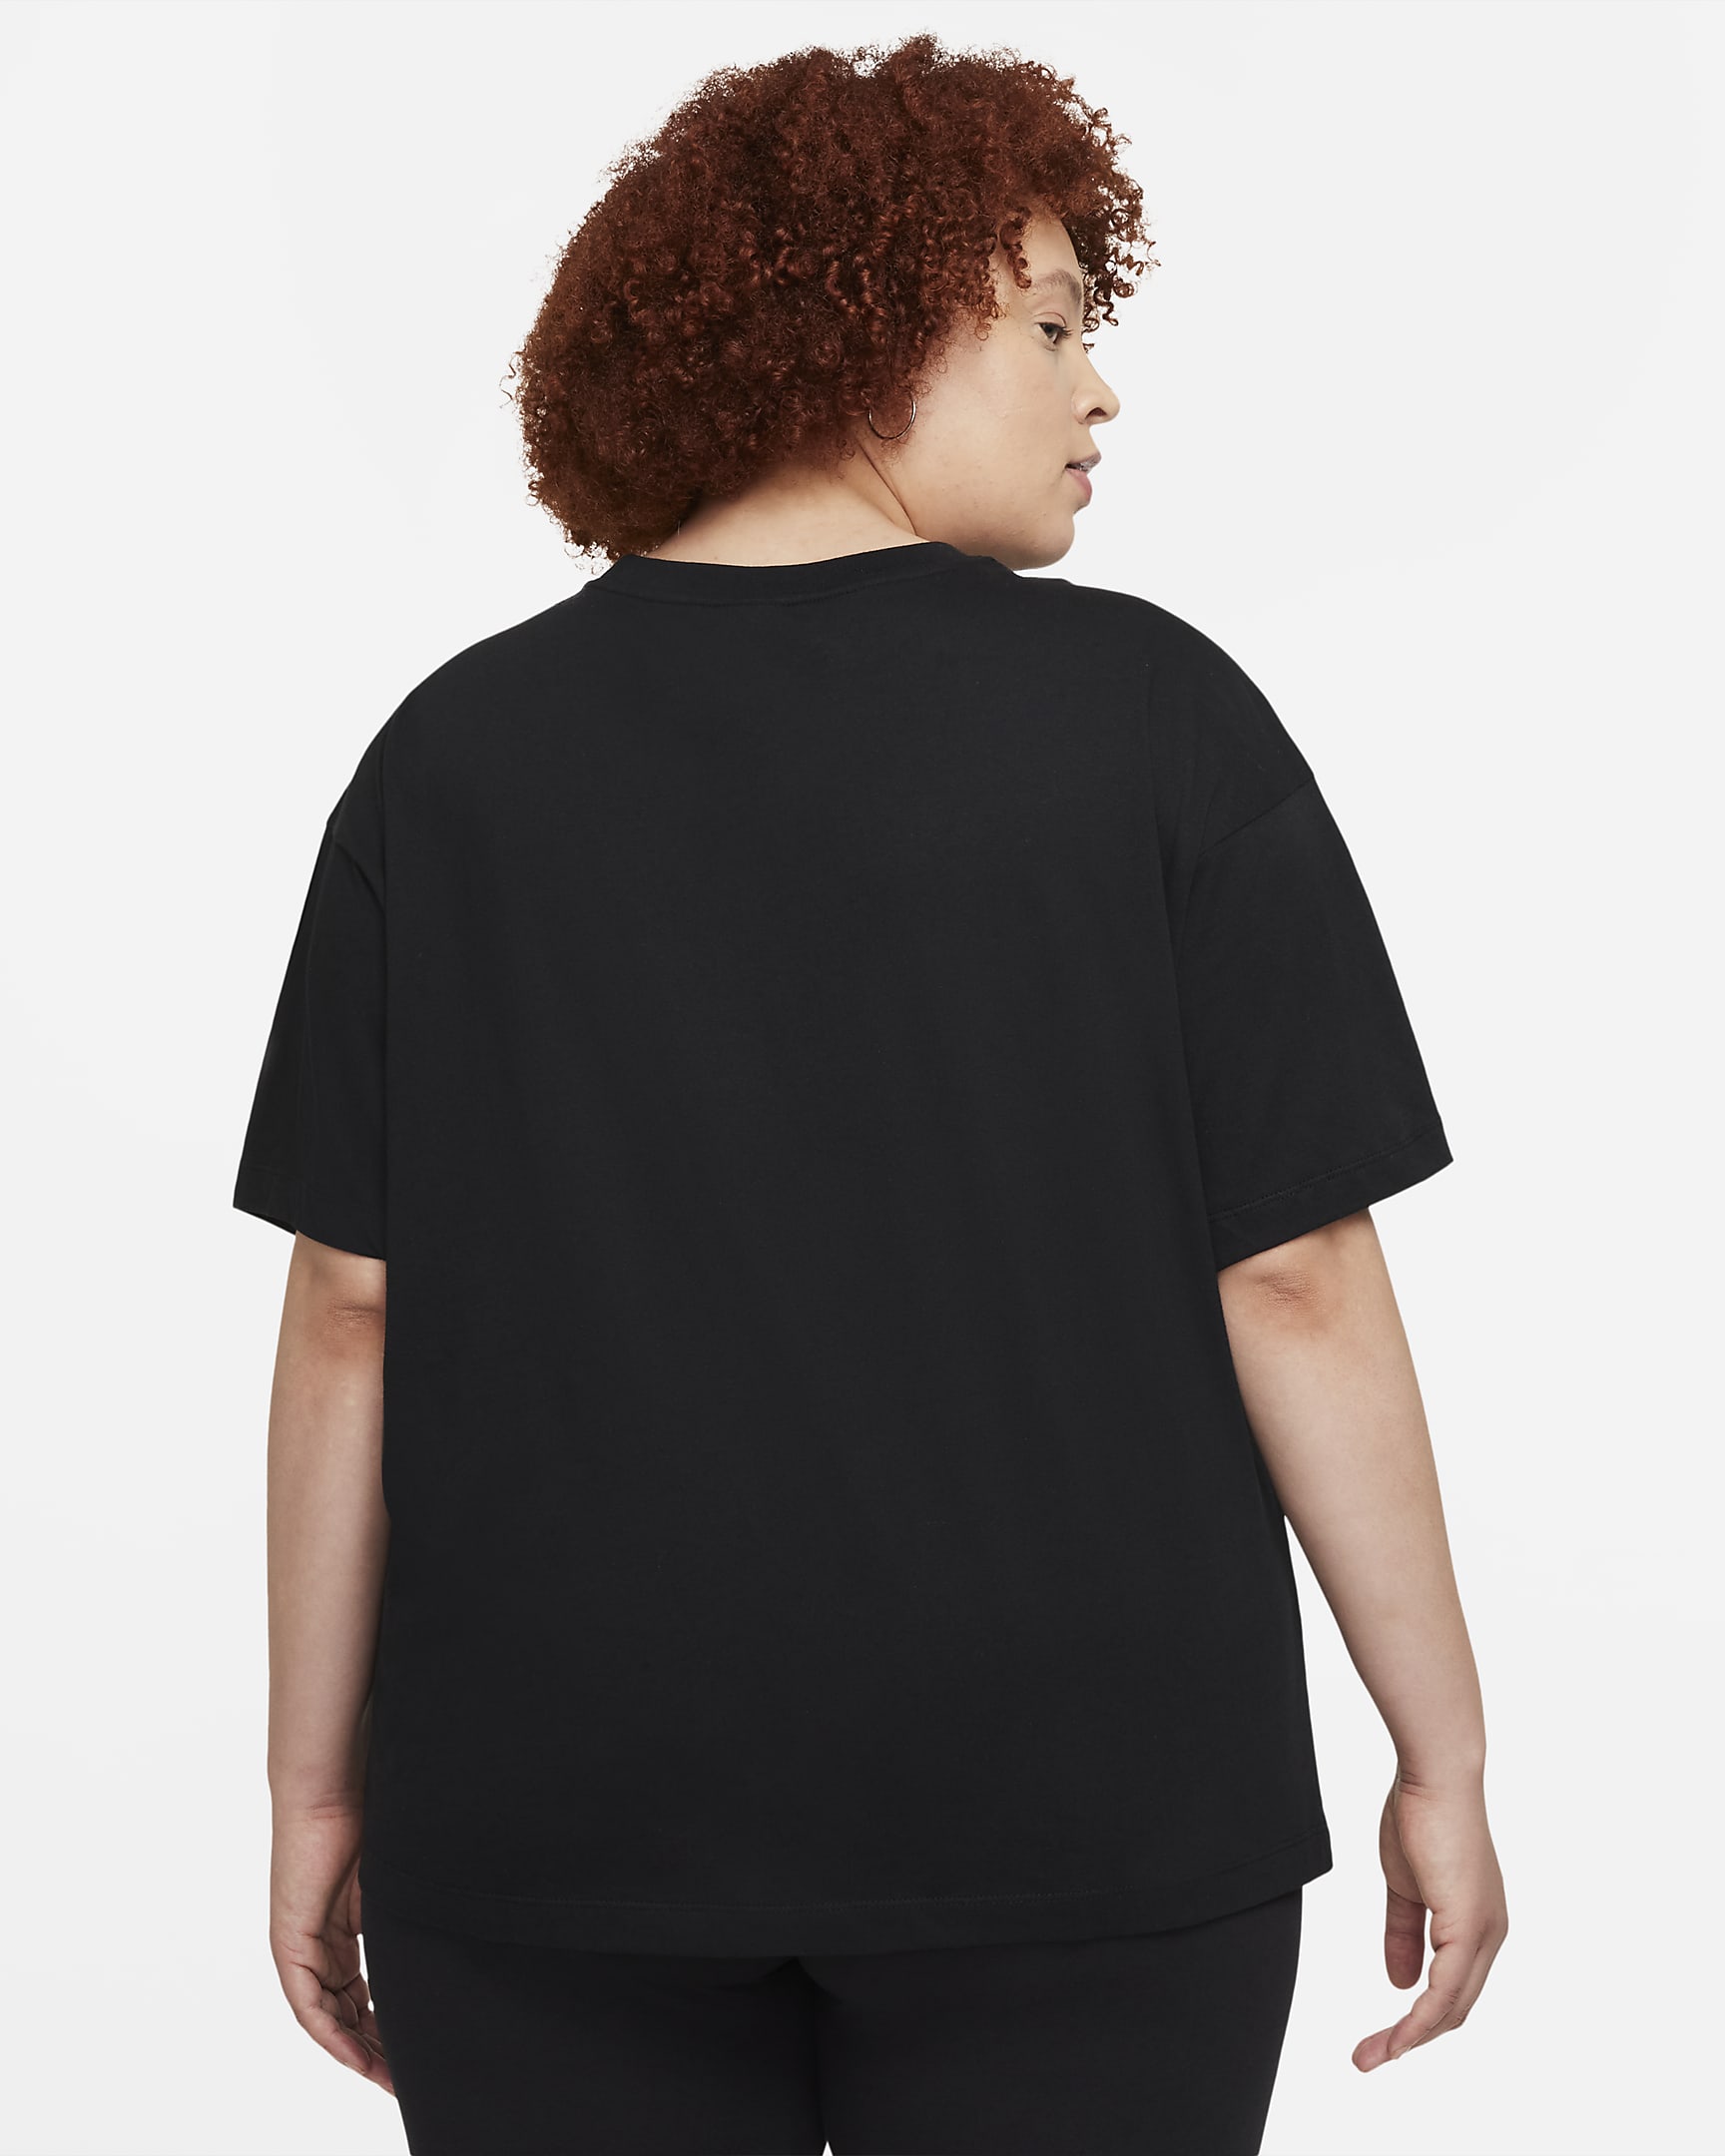 Nike Sportswear Essential Women's Oversized Short-Sleeve Top (Plus Size ...